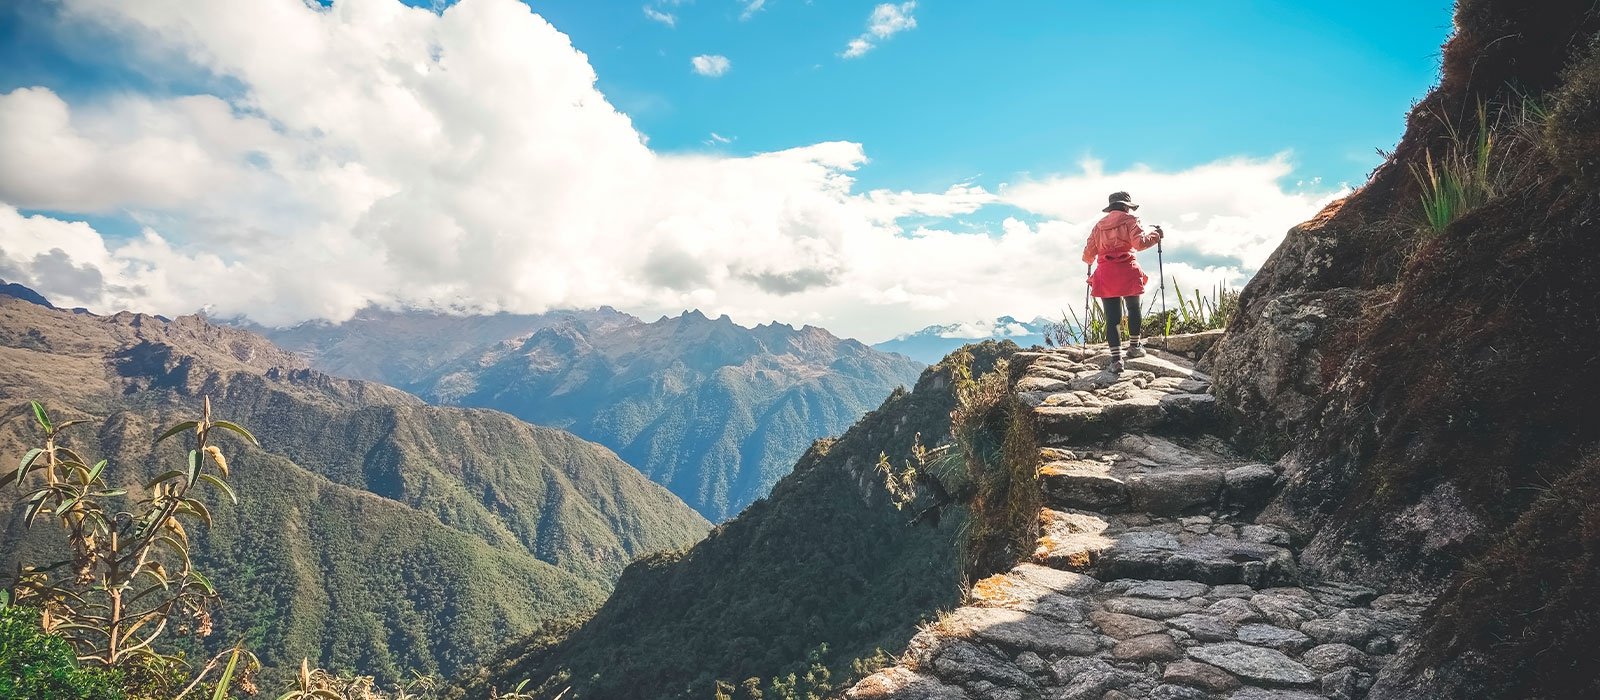 A Woman In Orange, Hiking the Inca Trail to Machu Picchu